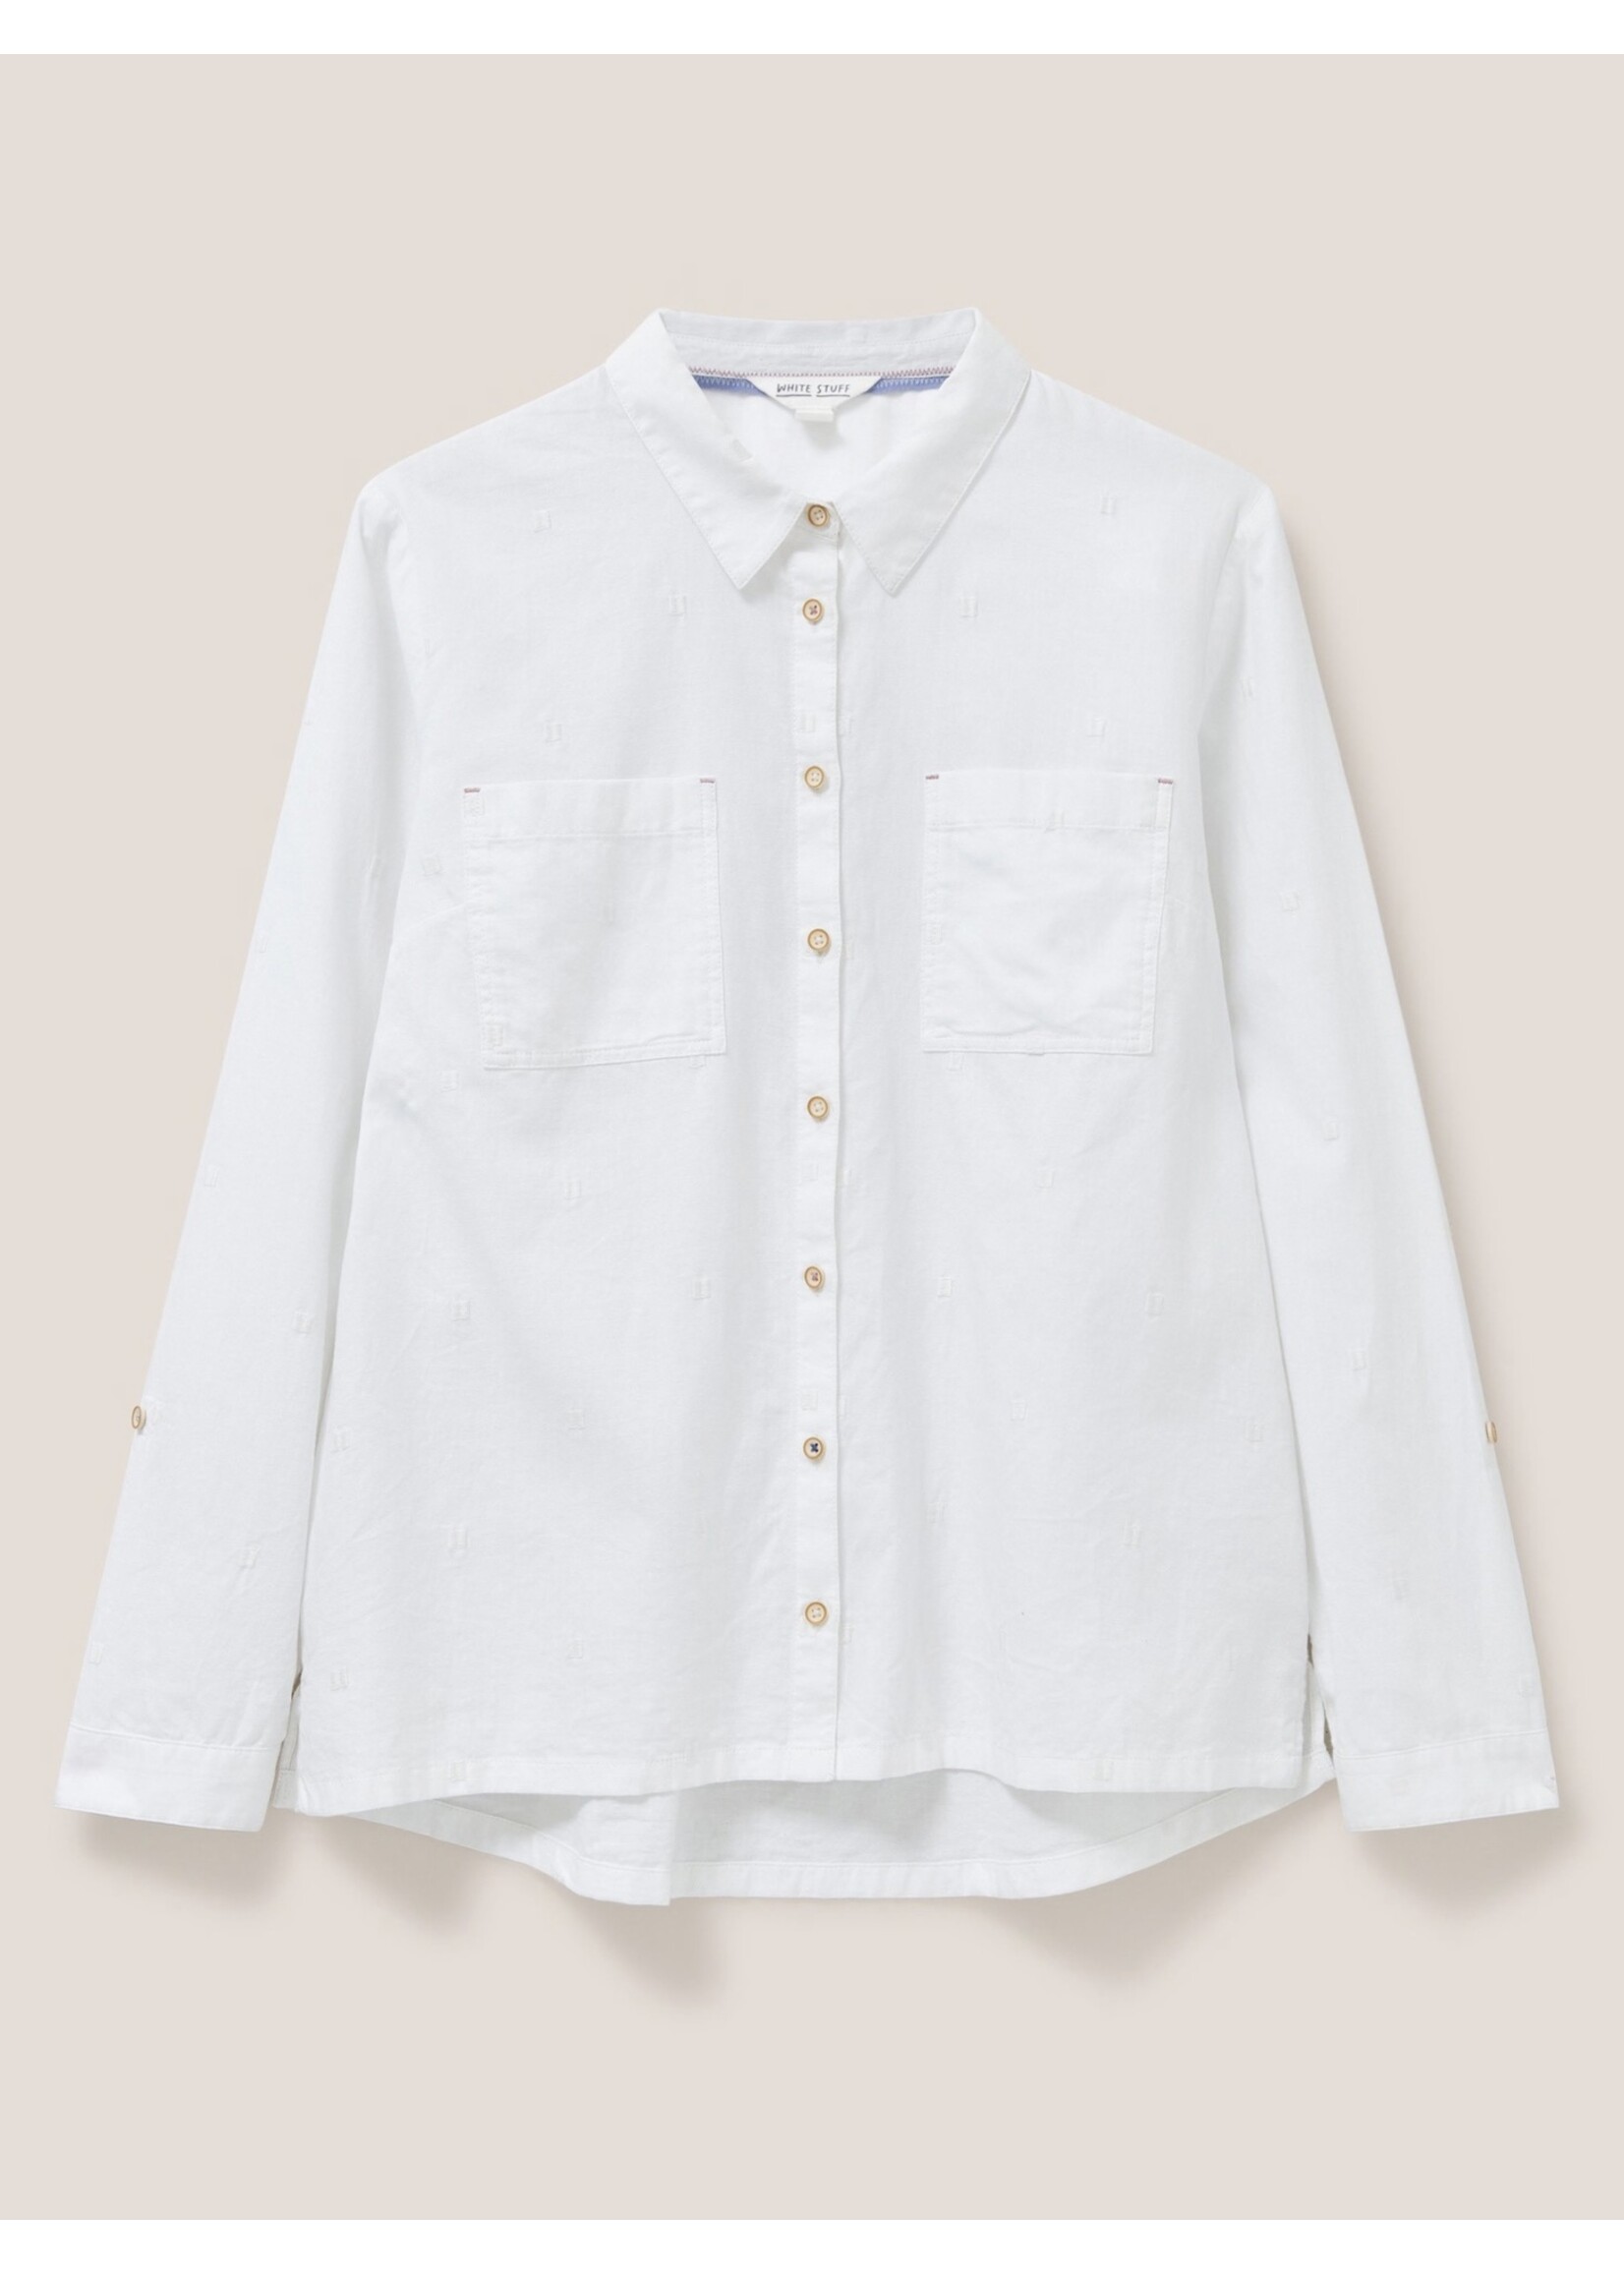 White Stuff Femme White Stuff - Sophie Organic Cotton Shirt